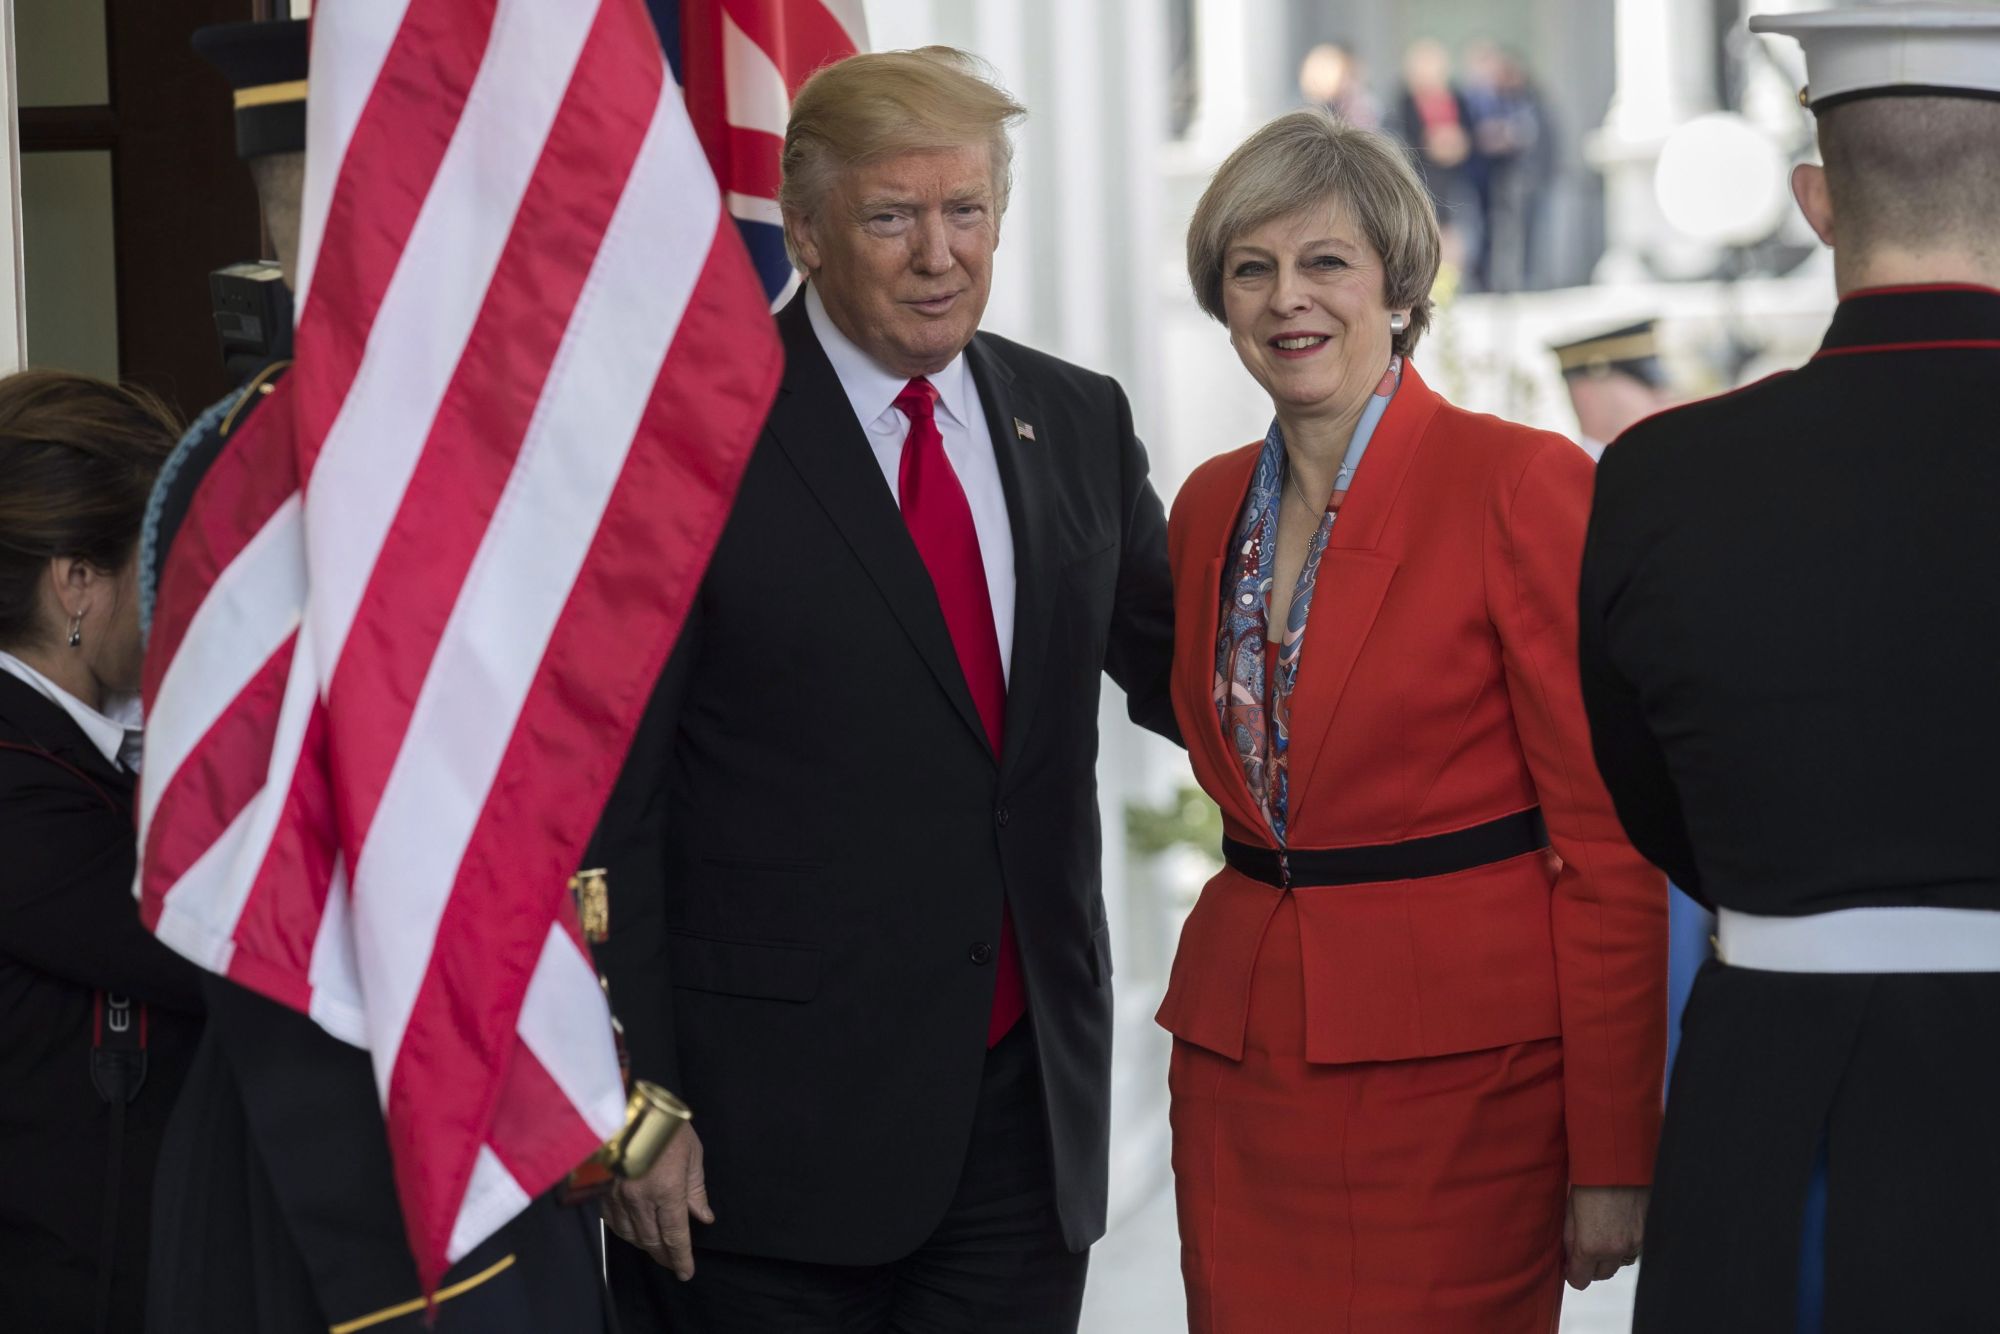 Donald Trump amerikai elnök (b) üdvözli Theresa May brit miniszterelnököt a washingtoni Fehér Házban 2017. január 27-én. May a január 20-án hivatalba lépett Donald Trump első külföldi vendége volt. (MTI/EPA/Shawn Thew)